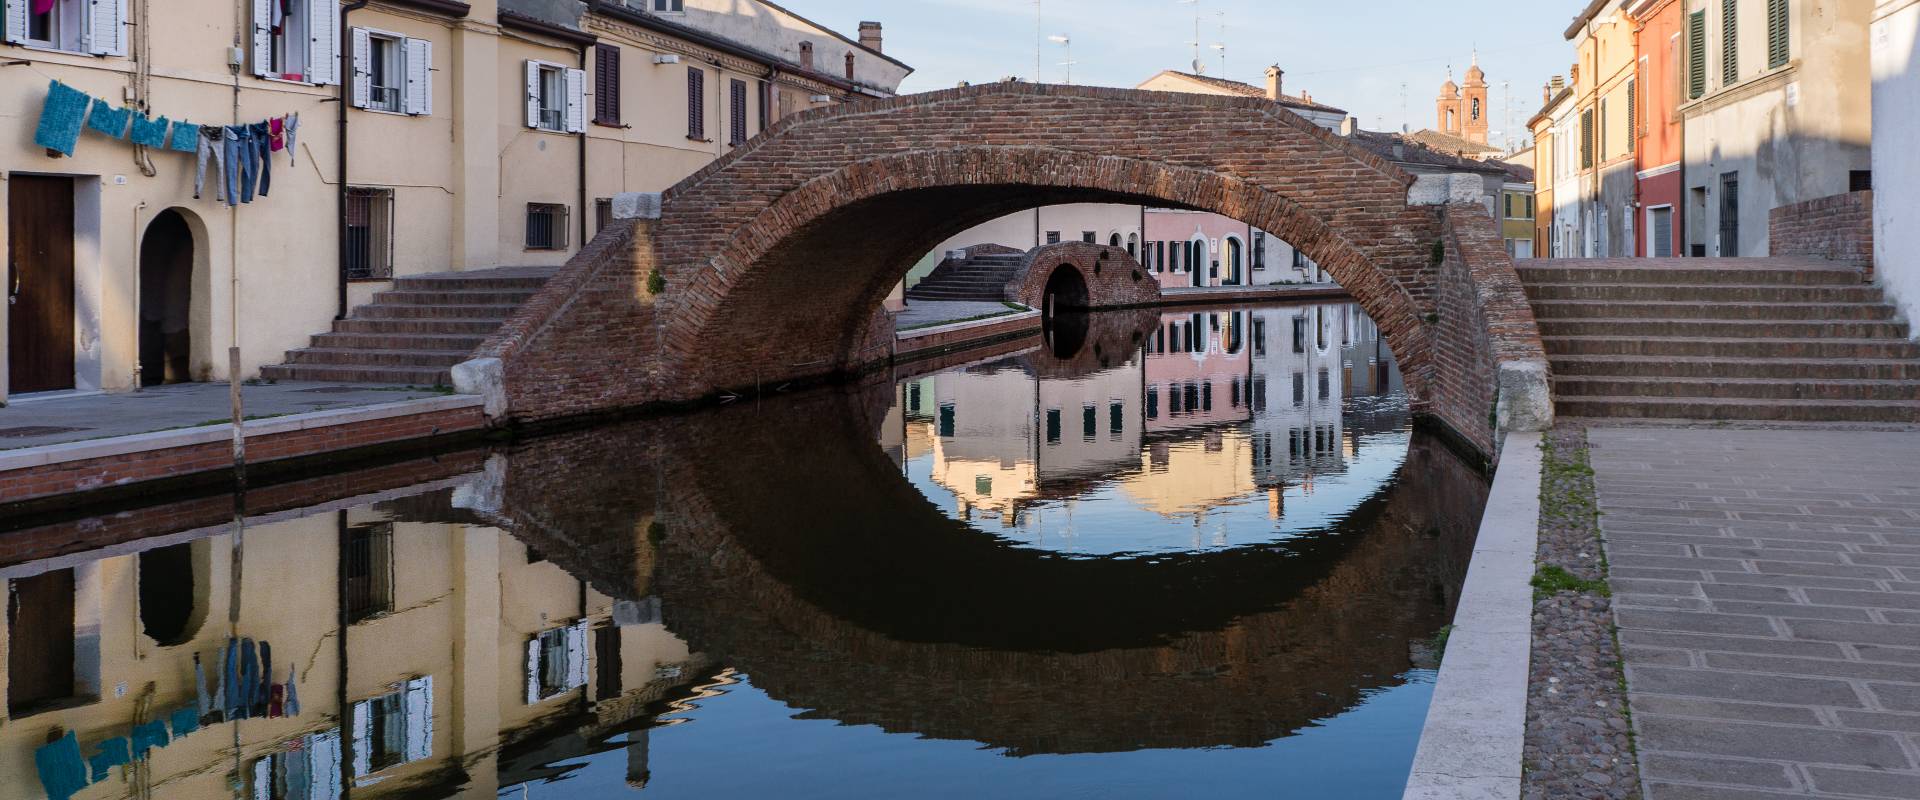 Ponte San Pietro nel centro storico di Comacchio foto di Vanni Lazzari